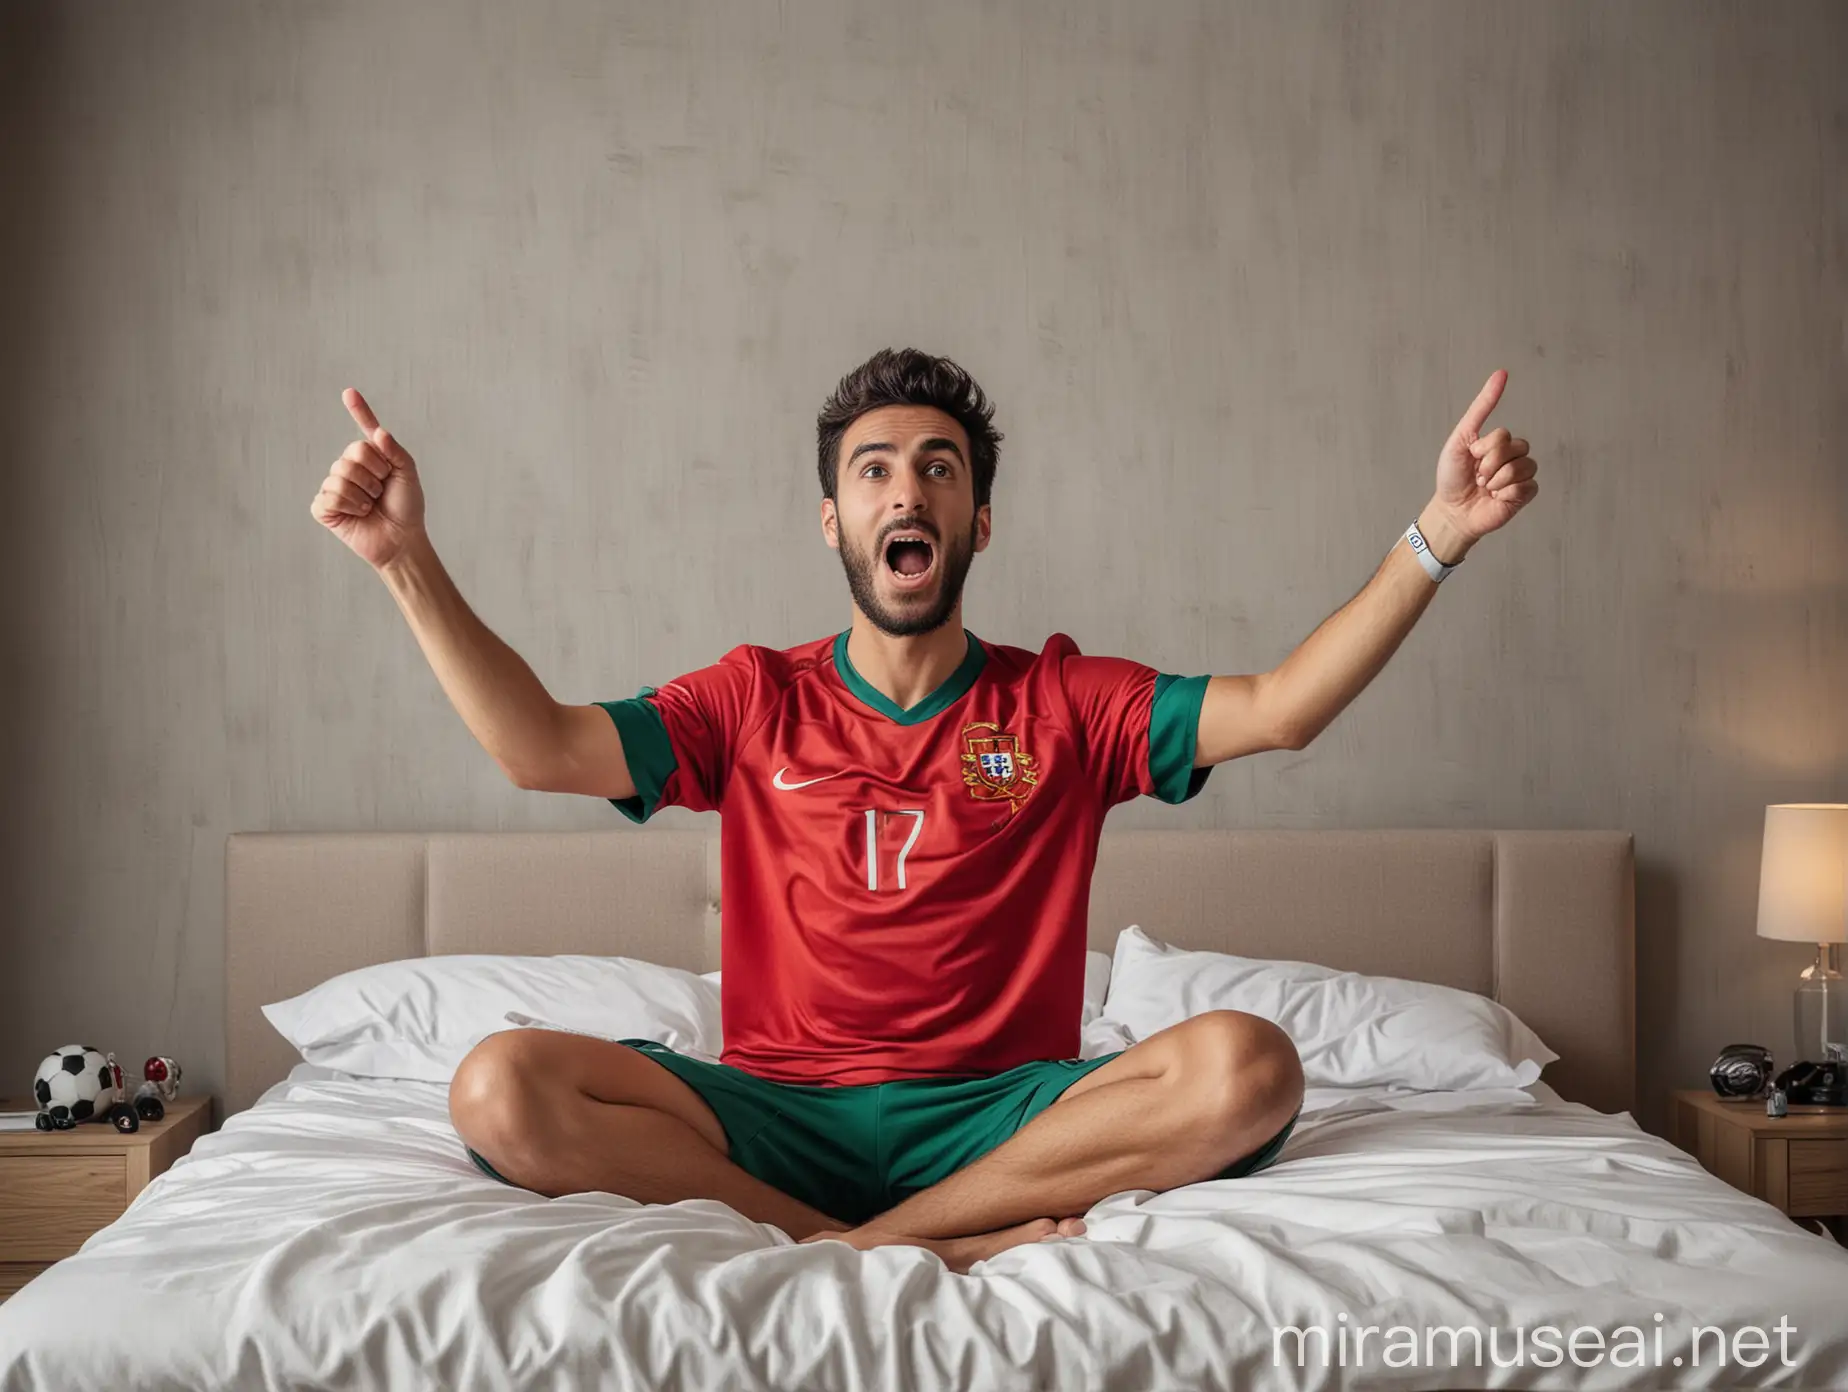 fã de futebol com camisola de portugal, assistindo a uma partida de futebol na tv, sentado numa cama a festejar um golo
